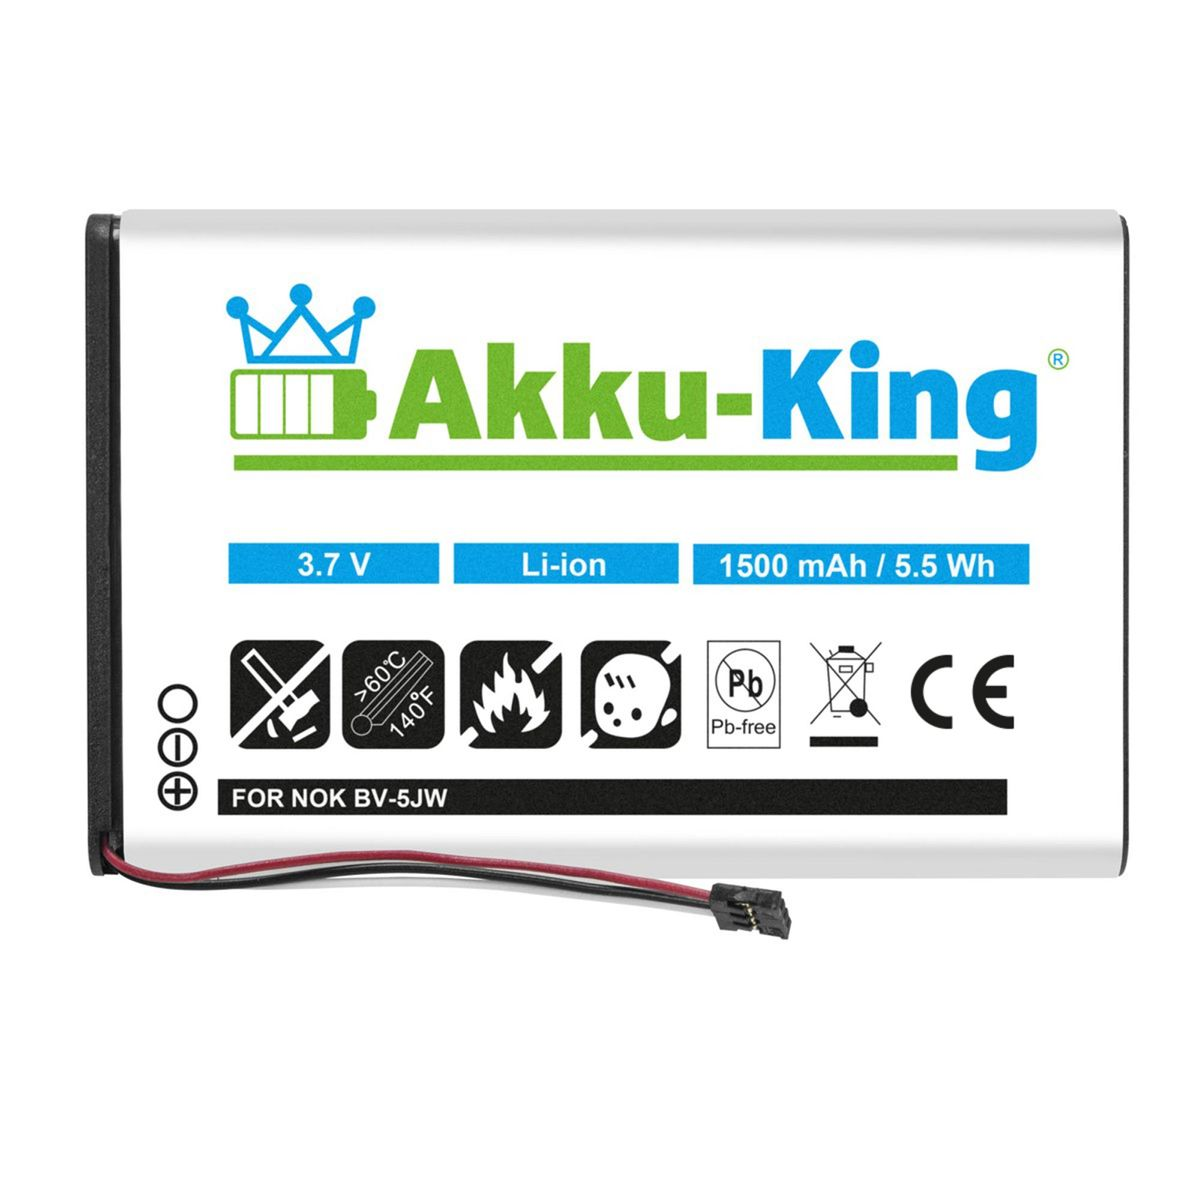 1500mAh Akku kompatibel AKKU-KING Li-Ion 3.8 BV-5JW Volt, Nokia Handy-Akku, mit